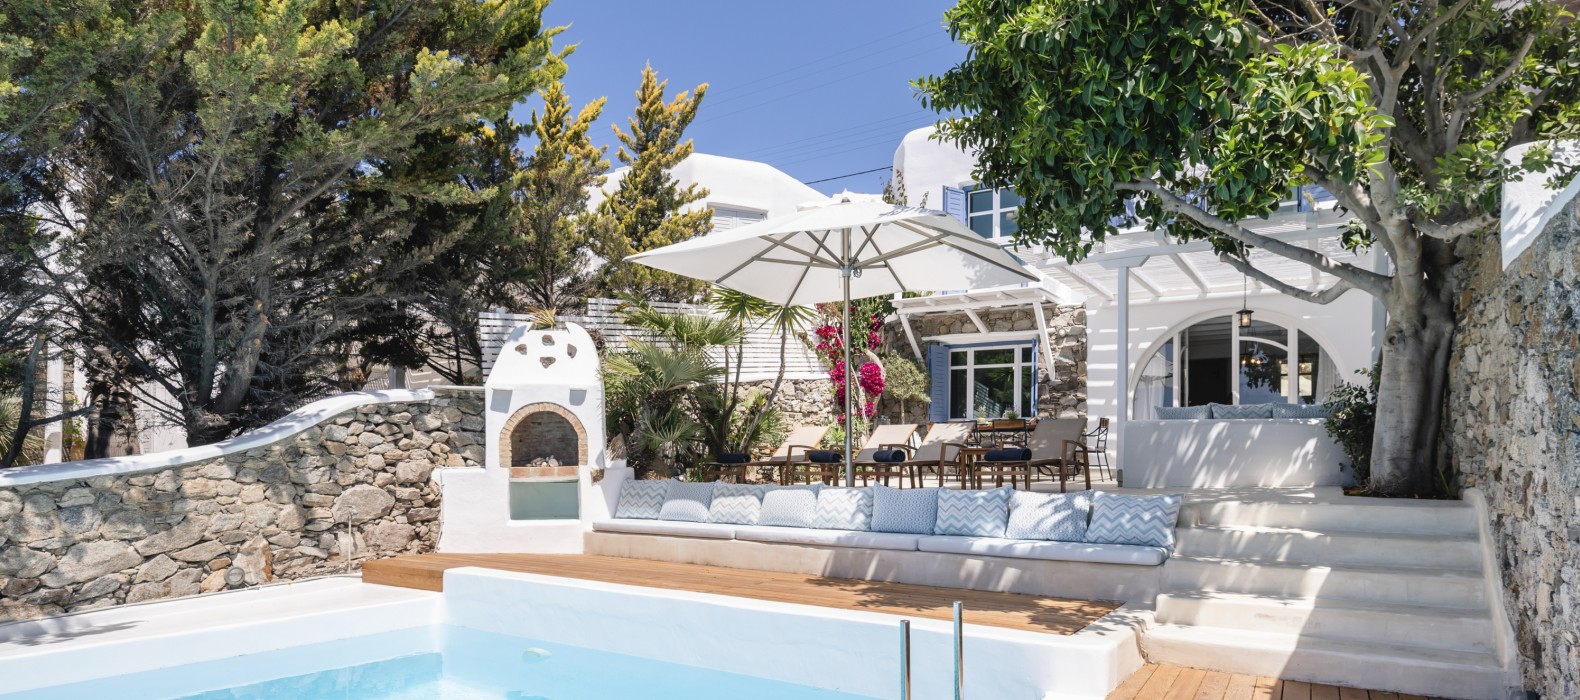 Exterior pool view of Villa Hieras in Mykonos